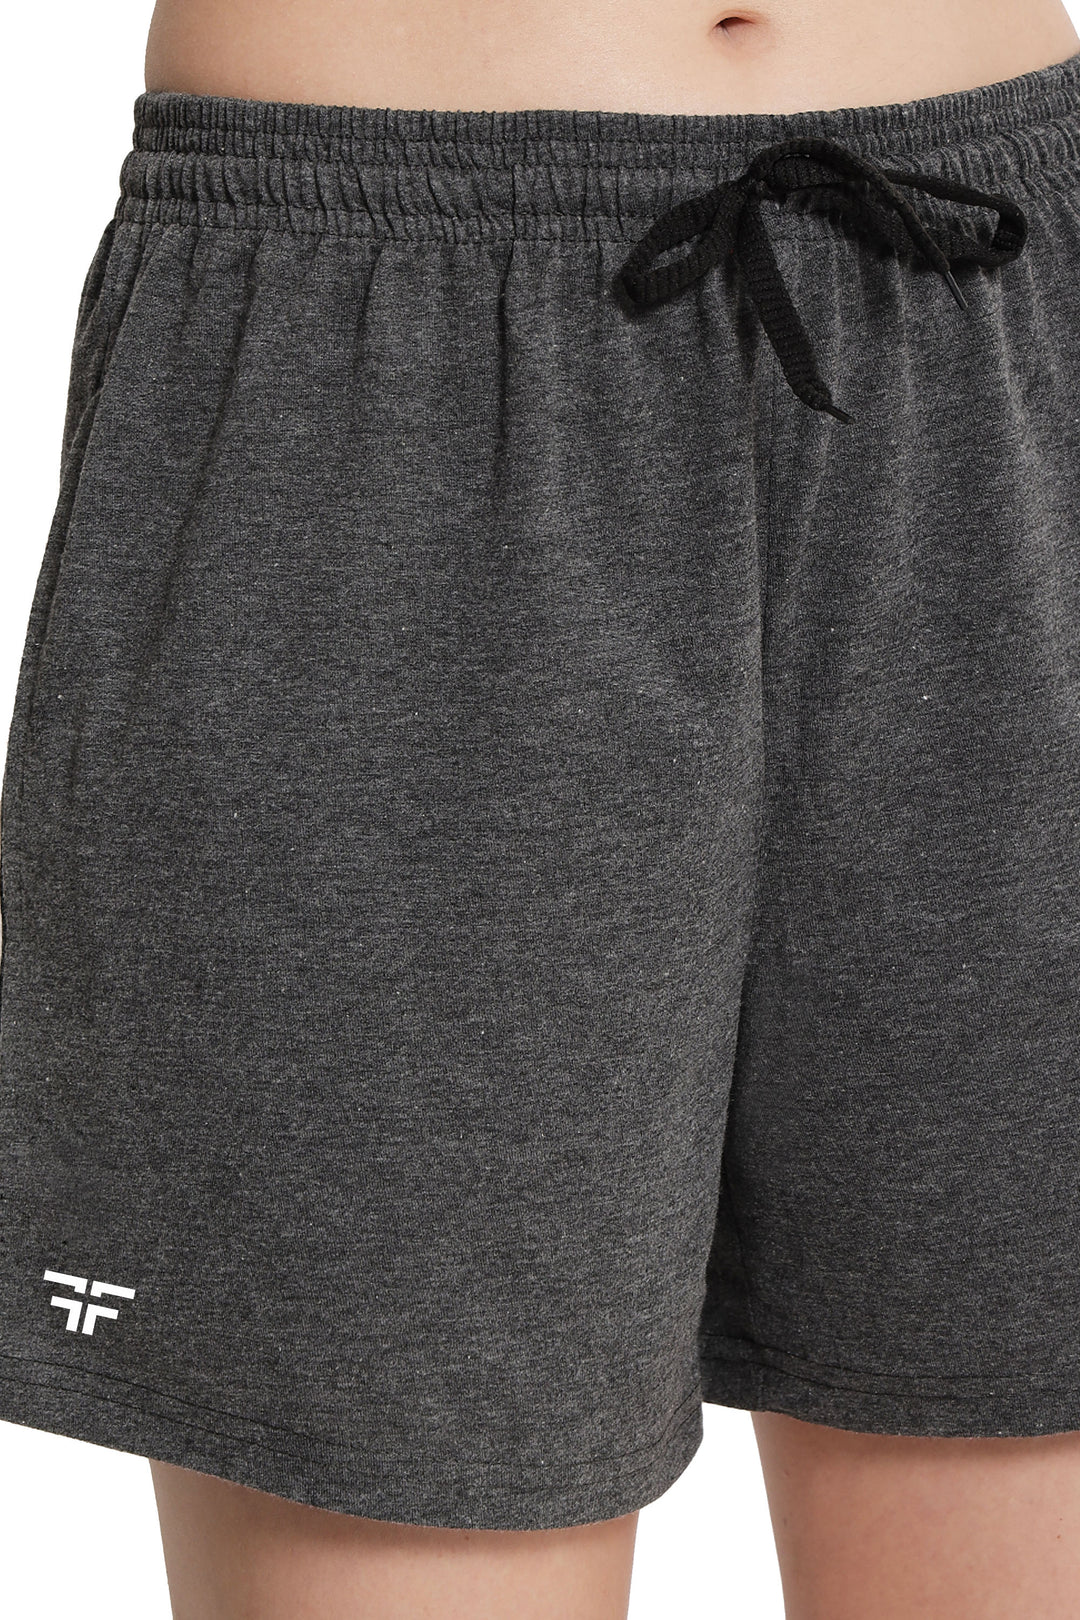 Dark Grey Color Solid Shorts